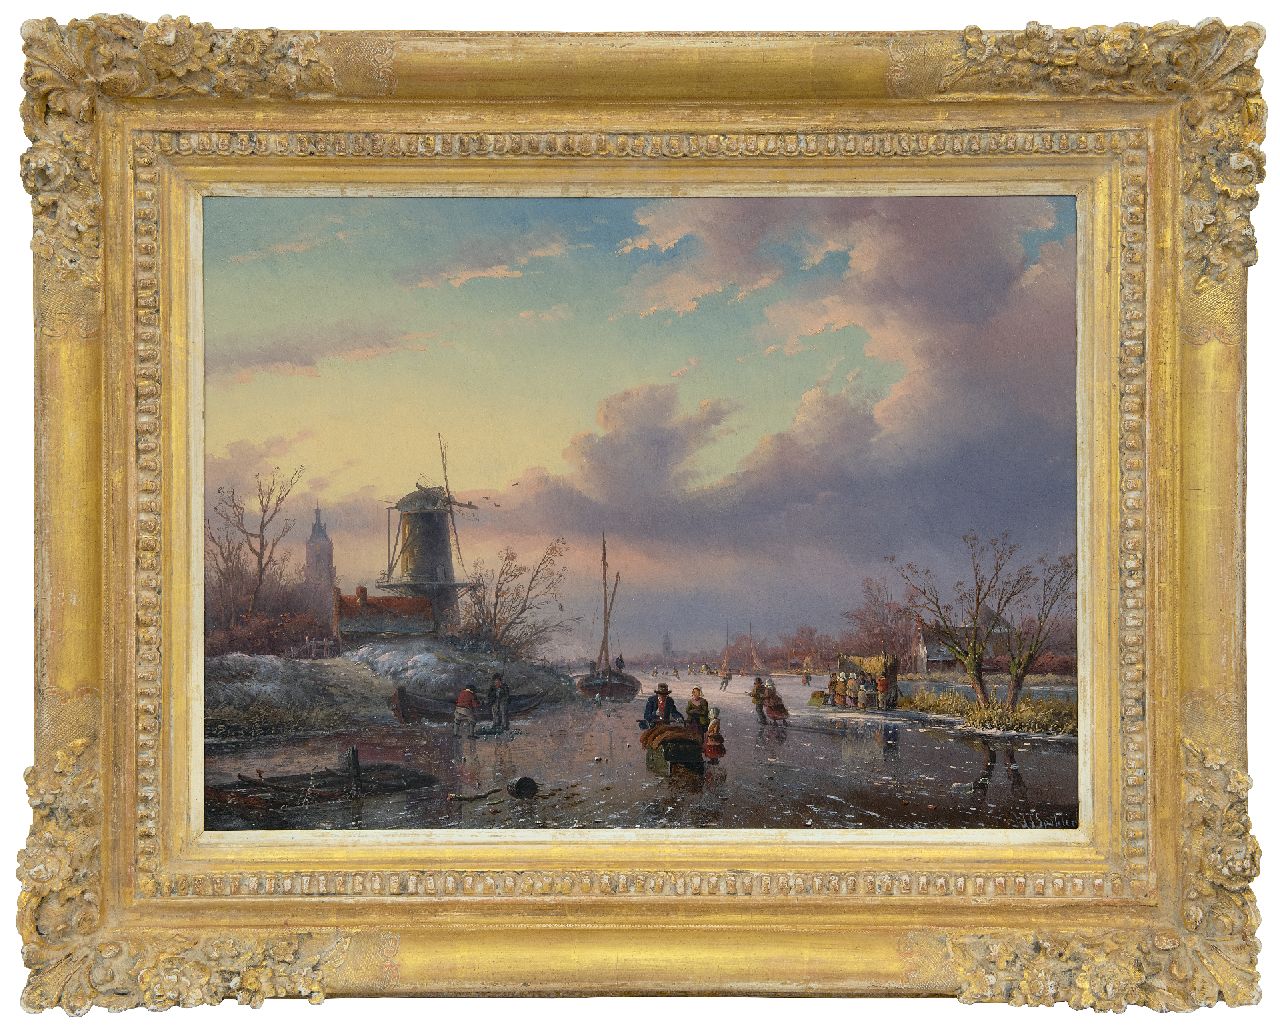 Spohler J.J.  | Jan Jacob Spohler | Paintings offered for sale | Skaters and 'koek-en-zopie' on a frozen river, oil on panel 43.0 x 59.0 cm, signed l.r.